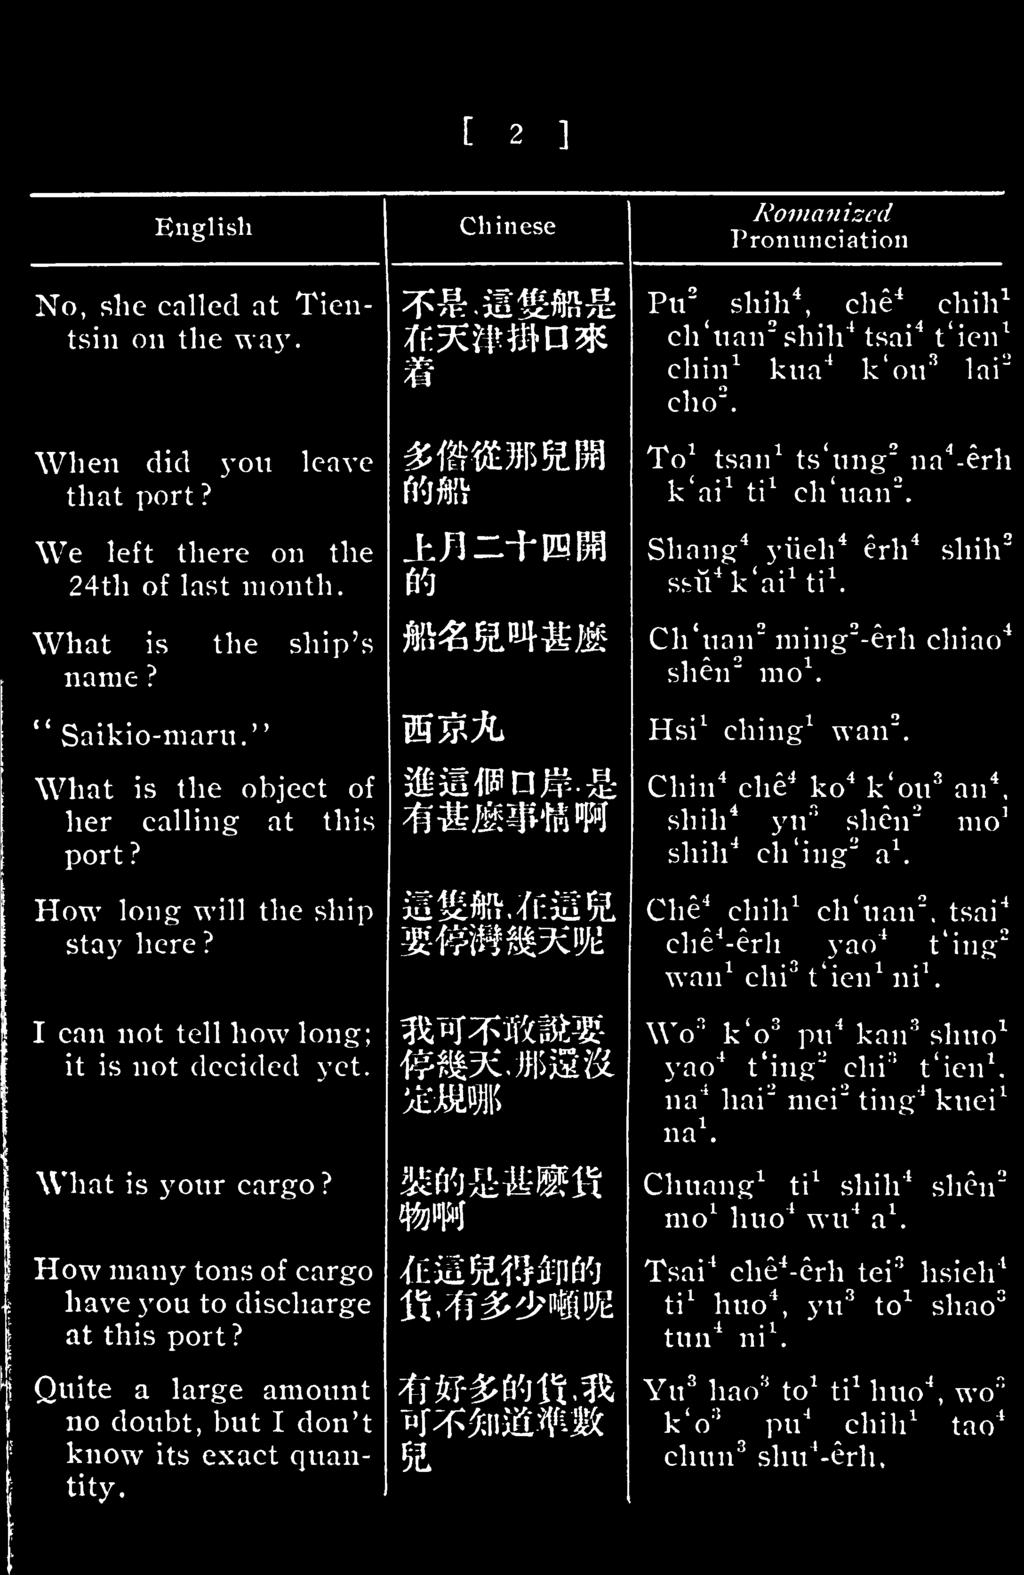 Chinese Romanized Pronunciation Pu 2 shih 4 che 4 chih 1, ^ ch'uairshih 4 tsai 4 t'ien 1 chin 1 kua 4 k'ou 3 lai" cho 2. To 1 tsan 1 ts'nng 2 na 4 -erh k'ai 1 ti 1 ch'uan 2.